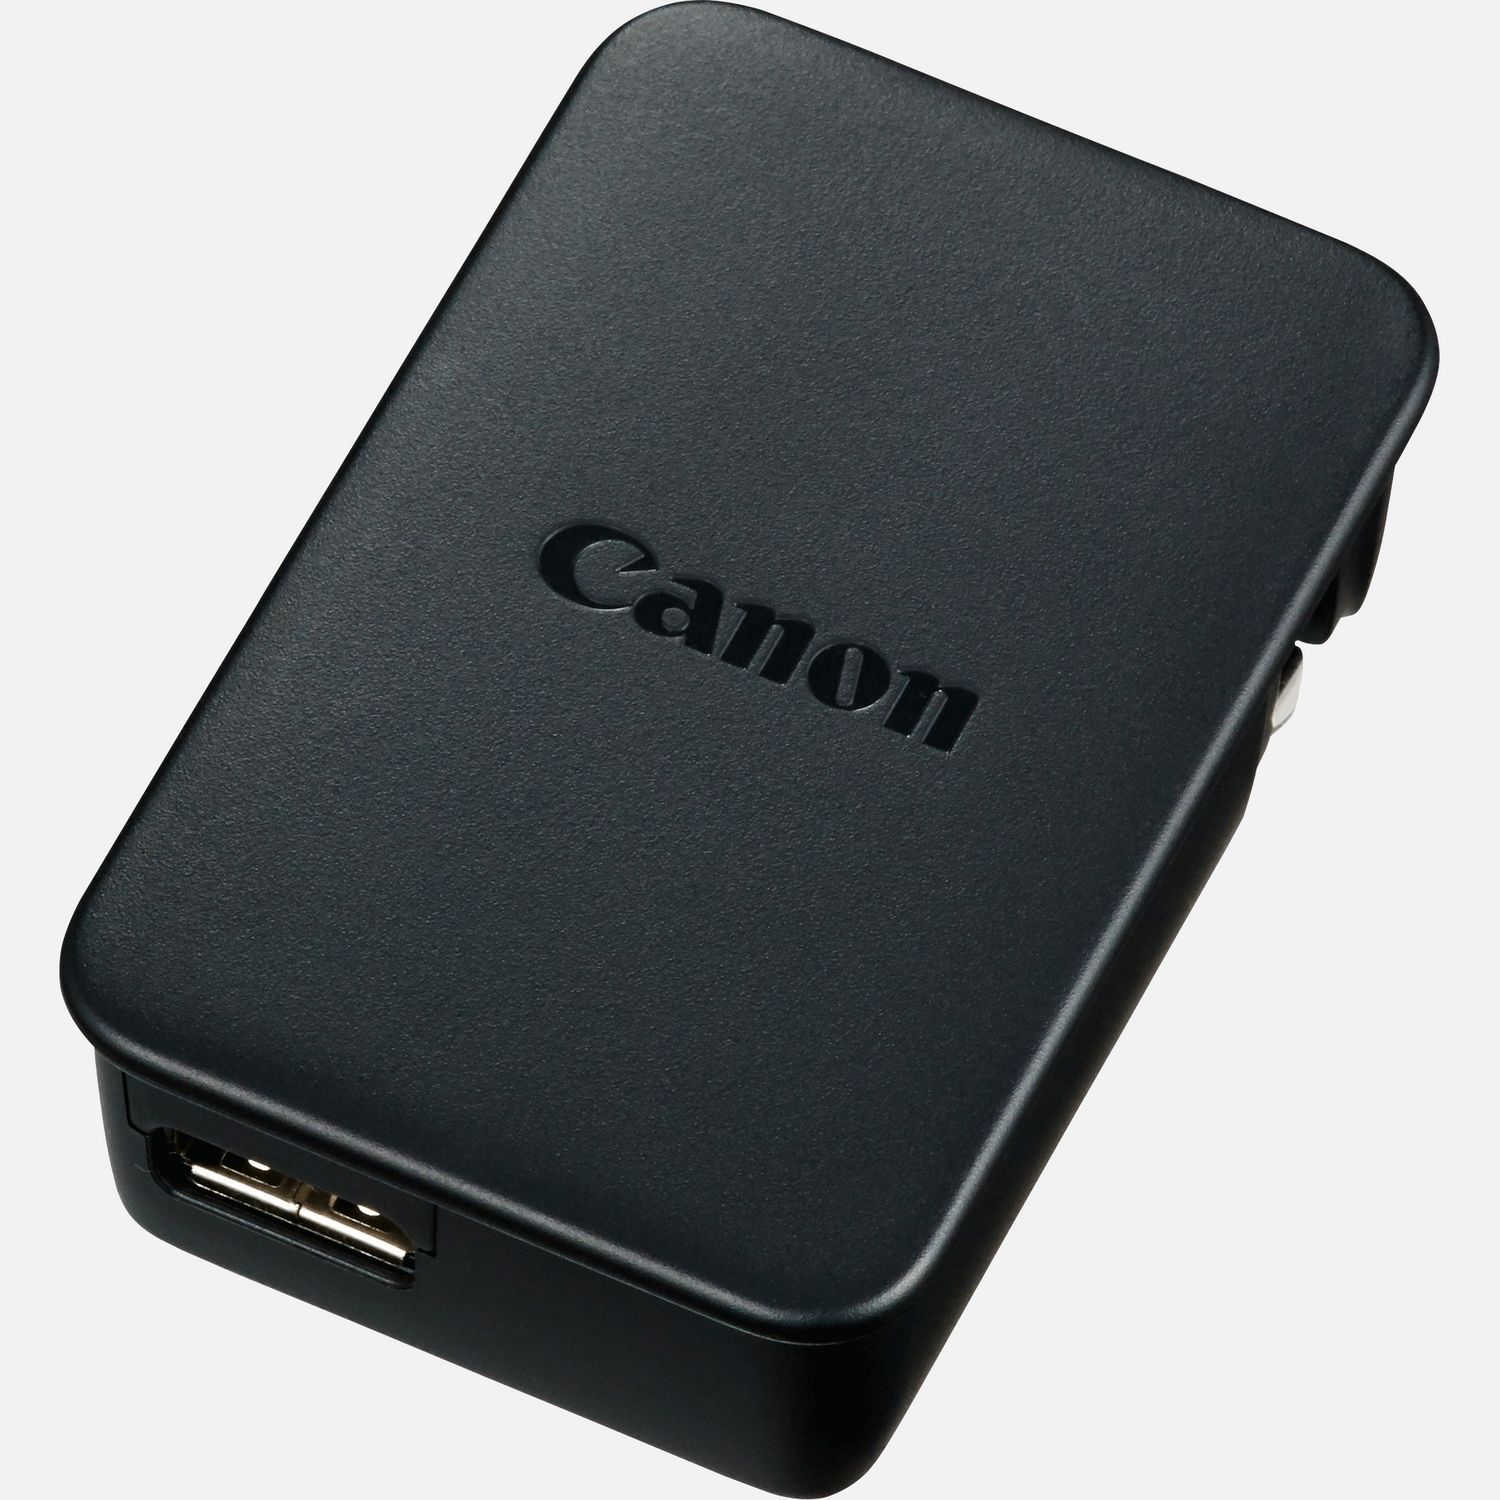 Eine alternative Option zum Aufladen des Akkus deiner kompatiblen PowerShot Kamera. Dieser Kompakt-Netzadapter wird an eine normale Steckdose angeschlossen und ermglicht das sofortige Aufladen deiner Kamera. Mit seiner kompakten Gre kannst du ihn immer mitnehmen, wenn du unterwegs bist. Alles, was du noch bentigst, ist das Canon USB- Kabel IFC-600PCU oder ein Standard Micro-USB-zu-USB Kabel.  Vorteile      Lade deine PowerShot Kamera ber jede normale Steckdose auf          Kompakt, leicht und transportfreundlich          Bitte beachte, dass du das Interface-Kabel IFC-600PCU-Kabel oder ein Standard-Micro-USB- zu-USB-Kabel bentigst, um deine Kamera anzuschlieen          Lieferumfang       CA-DC30E Kompakt-Netzadapter            Kompatibilitt       PowerShot N         PowerShot N2         PowerShot SX720 HS         PowerShot SX730 HS         PowerShot SX740 HS         PowerShot G9 X         PowerShot G9 X Mark II         PowerShot G7 X Mark II         PowerShot G5 X         PowerShot G1 X Mark III